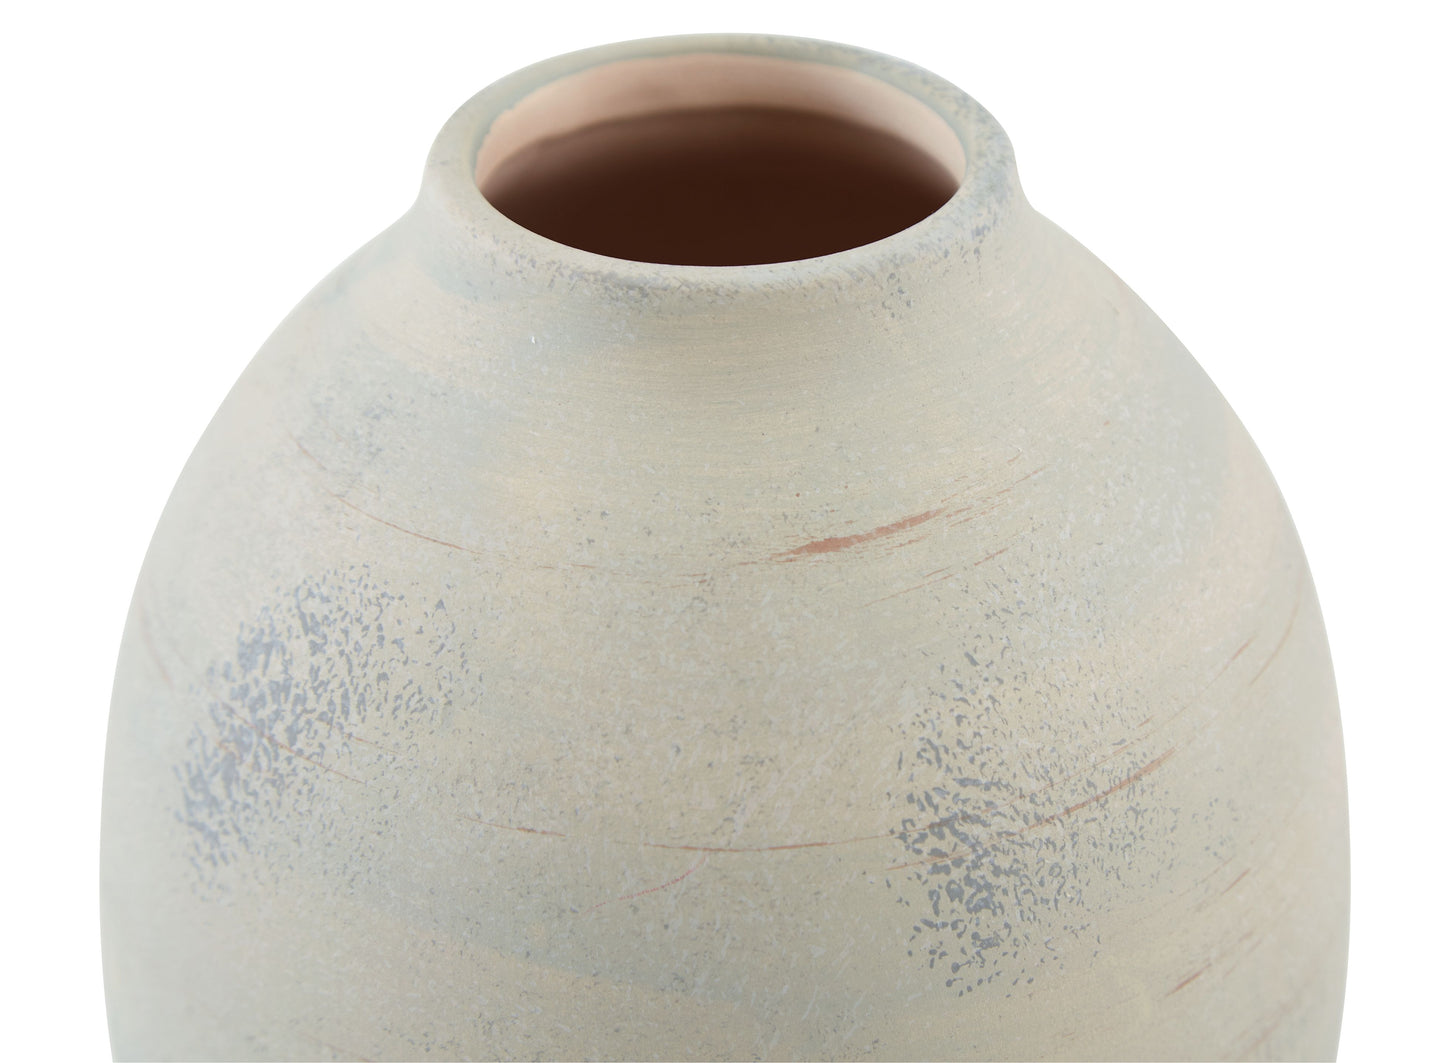 Clayson - Vase